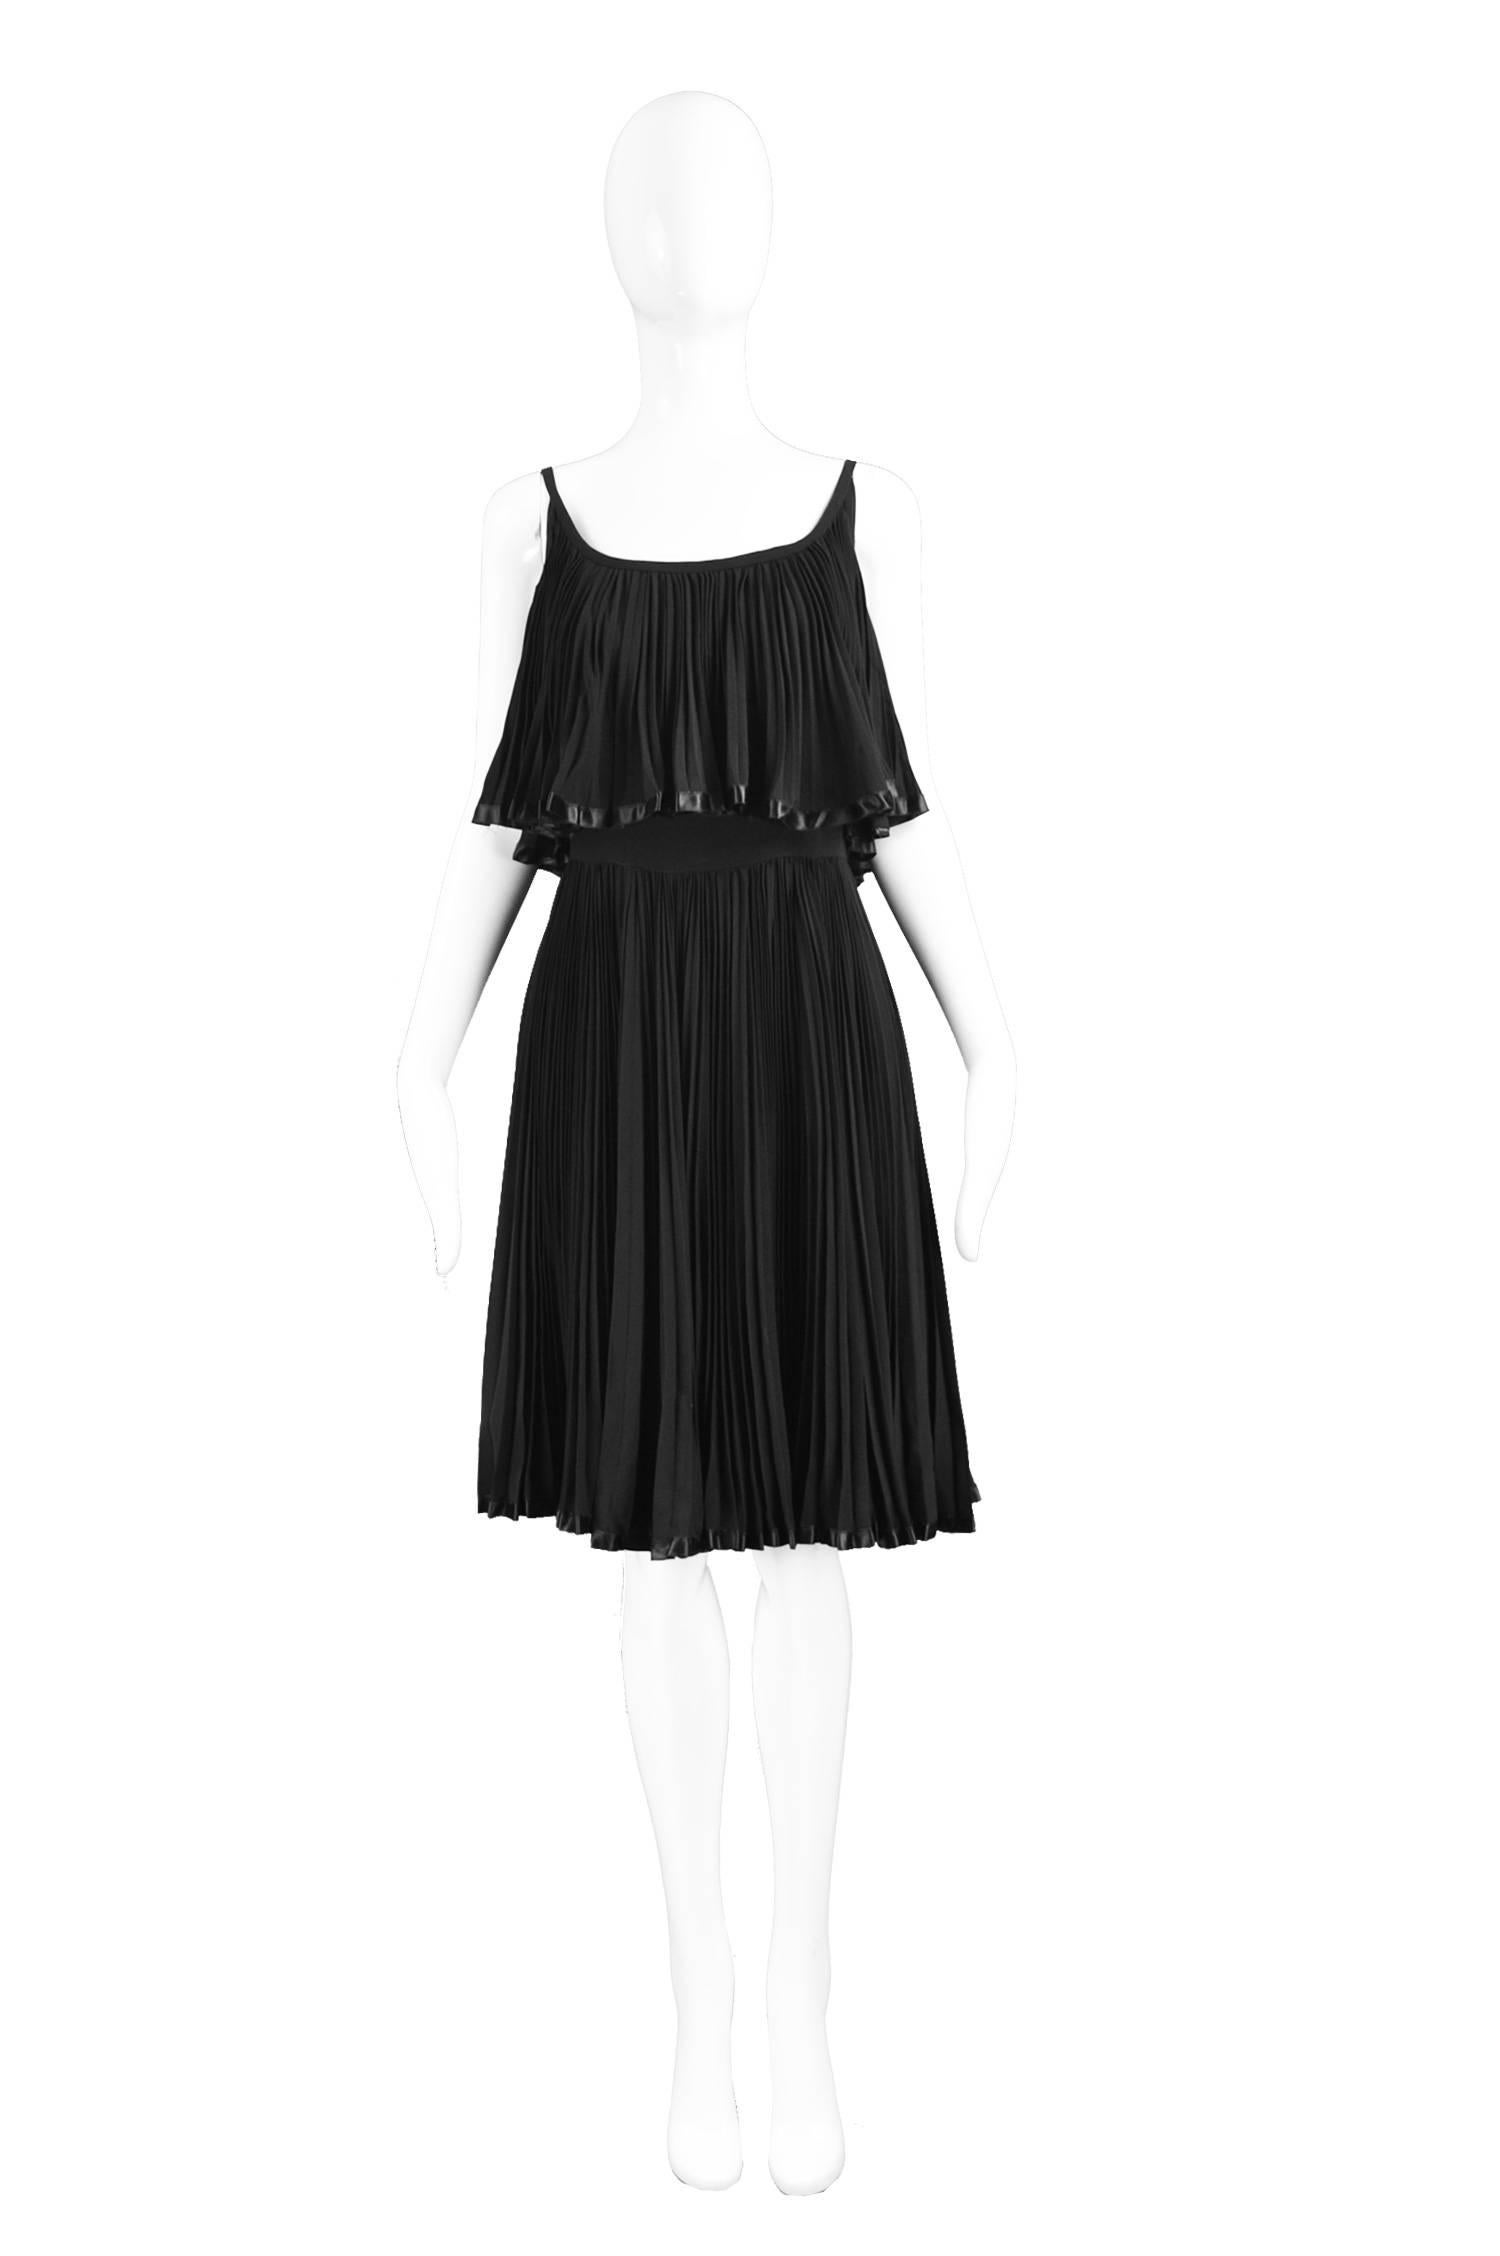 Oleg Cassini Vintage Tiered Pleated Crepe Little Black Dress, 1960s

Estimated Size: UK 8/ US 4/ EU 36. Please check measurements. 
Bust - 34” / 86cm
Waist - 26” / 66cm
Hips - Free
Length (Bust to Hem) - 30” / 76cm
 
Condition: Excellent Vintage